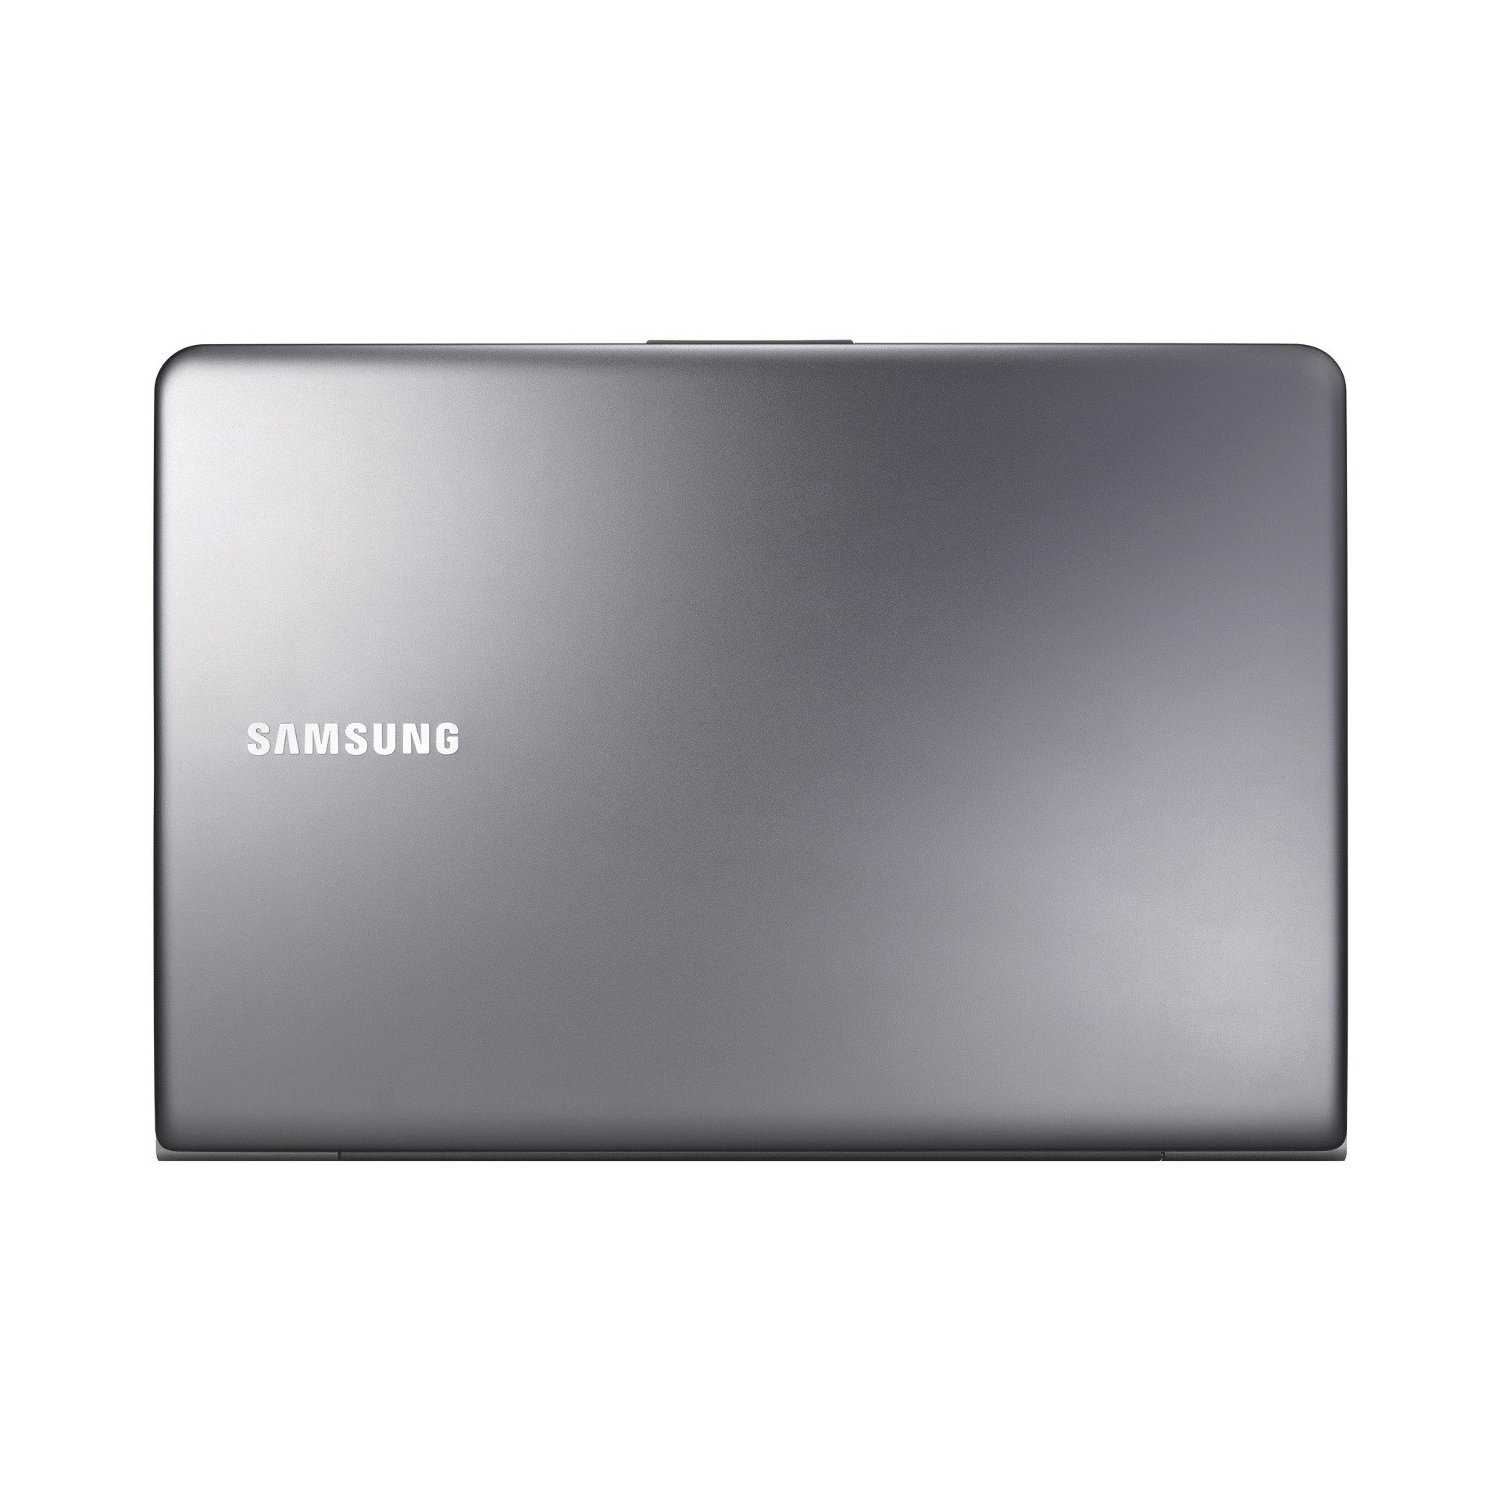 Ноутбук Samsung 530U3C (NP530U3C-A08RU) - подробные характеристики обзоры видео фото Цены в интернет-магазинах где можно купить ноутбук Samsung 530U3C (NP530U3C-A08RU)